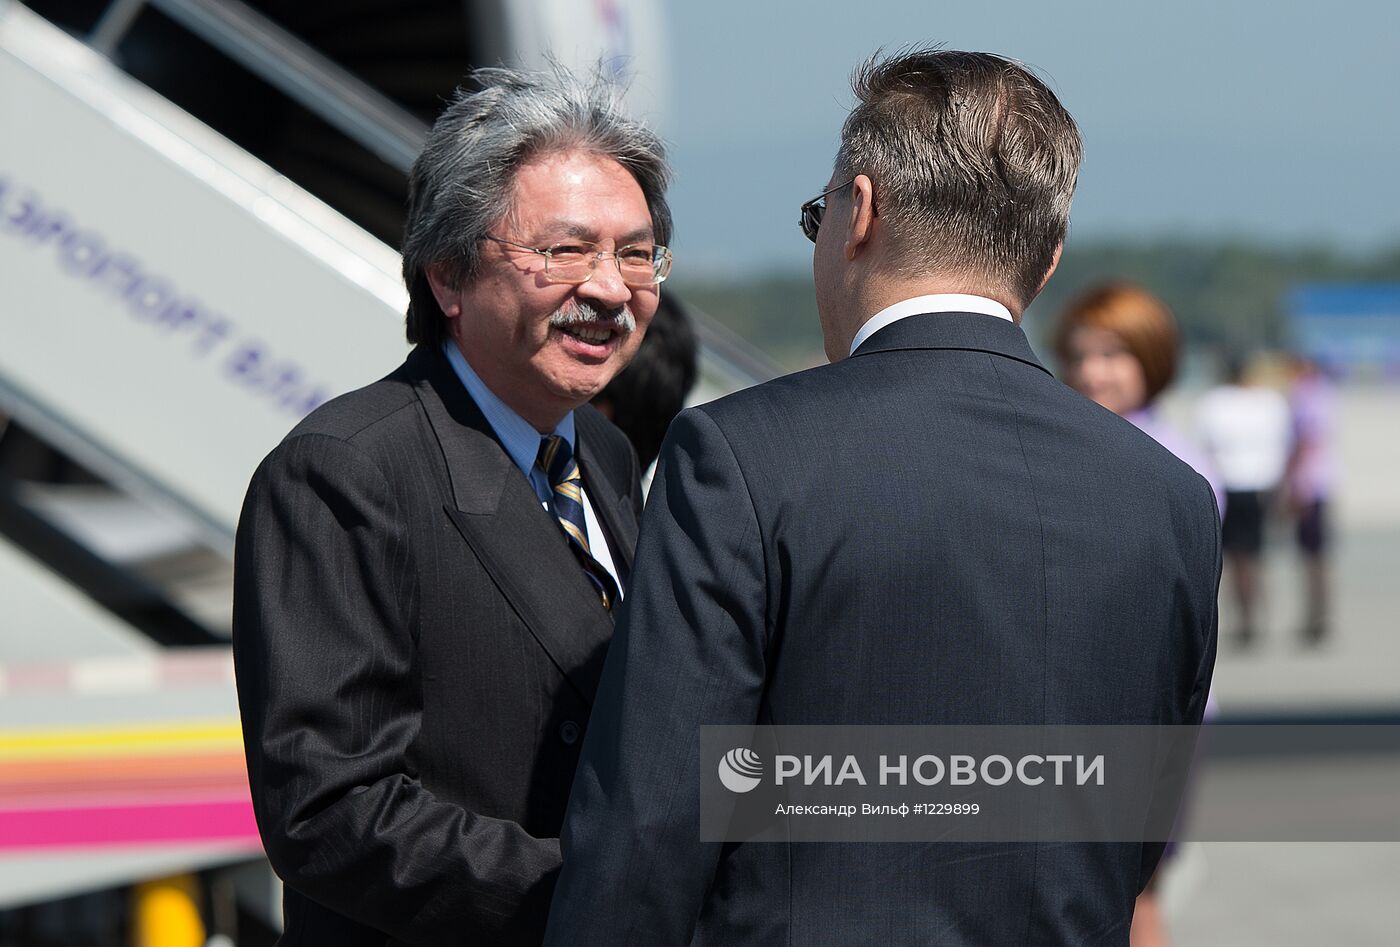 Прилет глав делегаций стран АТЭС во Владивосток